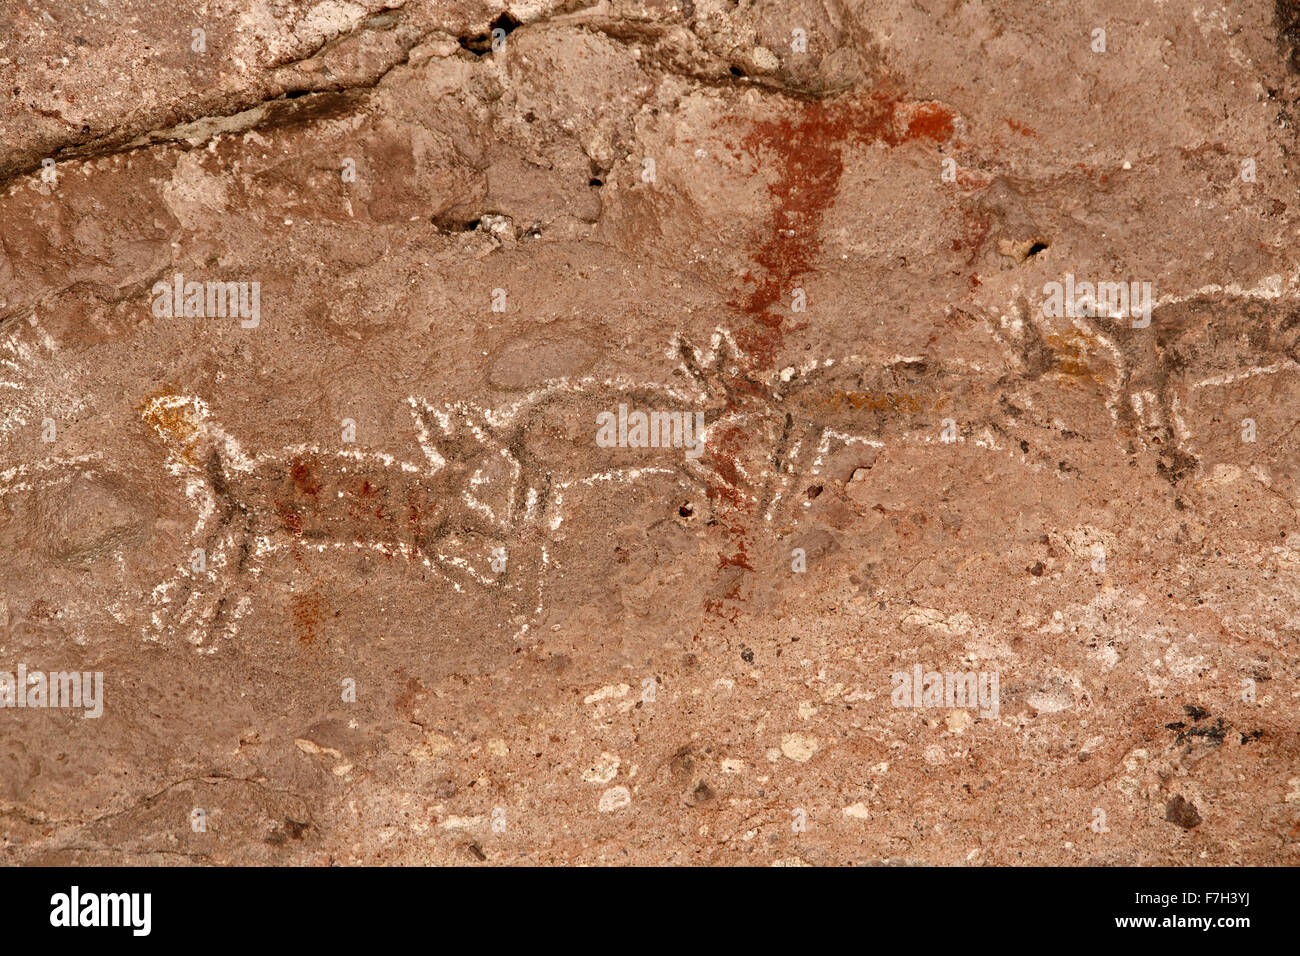 Pr5408-D. Pétroglyphes et peintures rupestres de Santa Marta, qui montrent des personnes, d'animaux (chevreuils, lapins, poissons, etc.). Baja, au Mexique. Banque D'Images